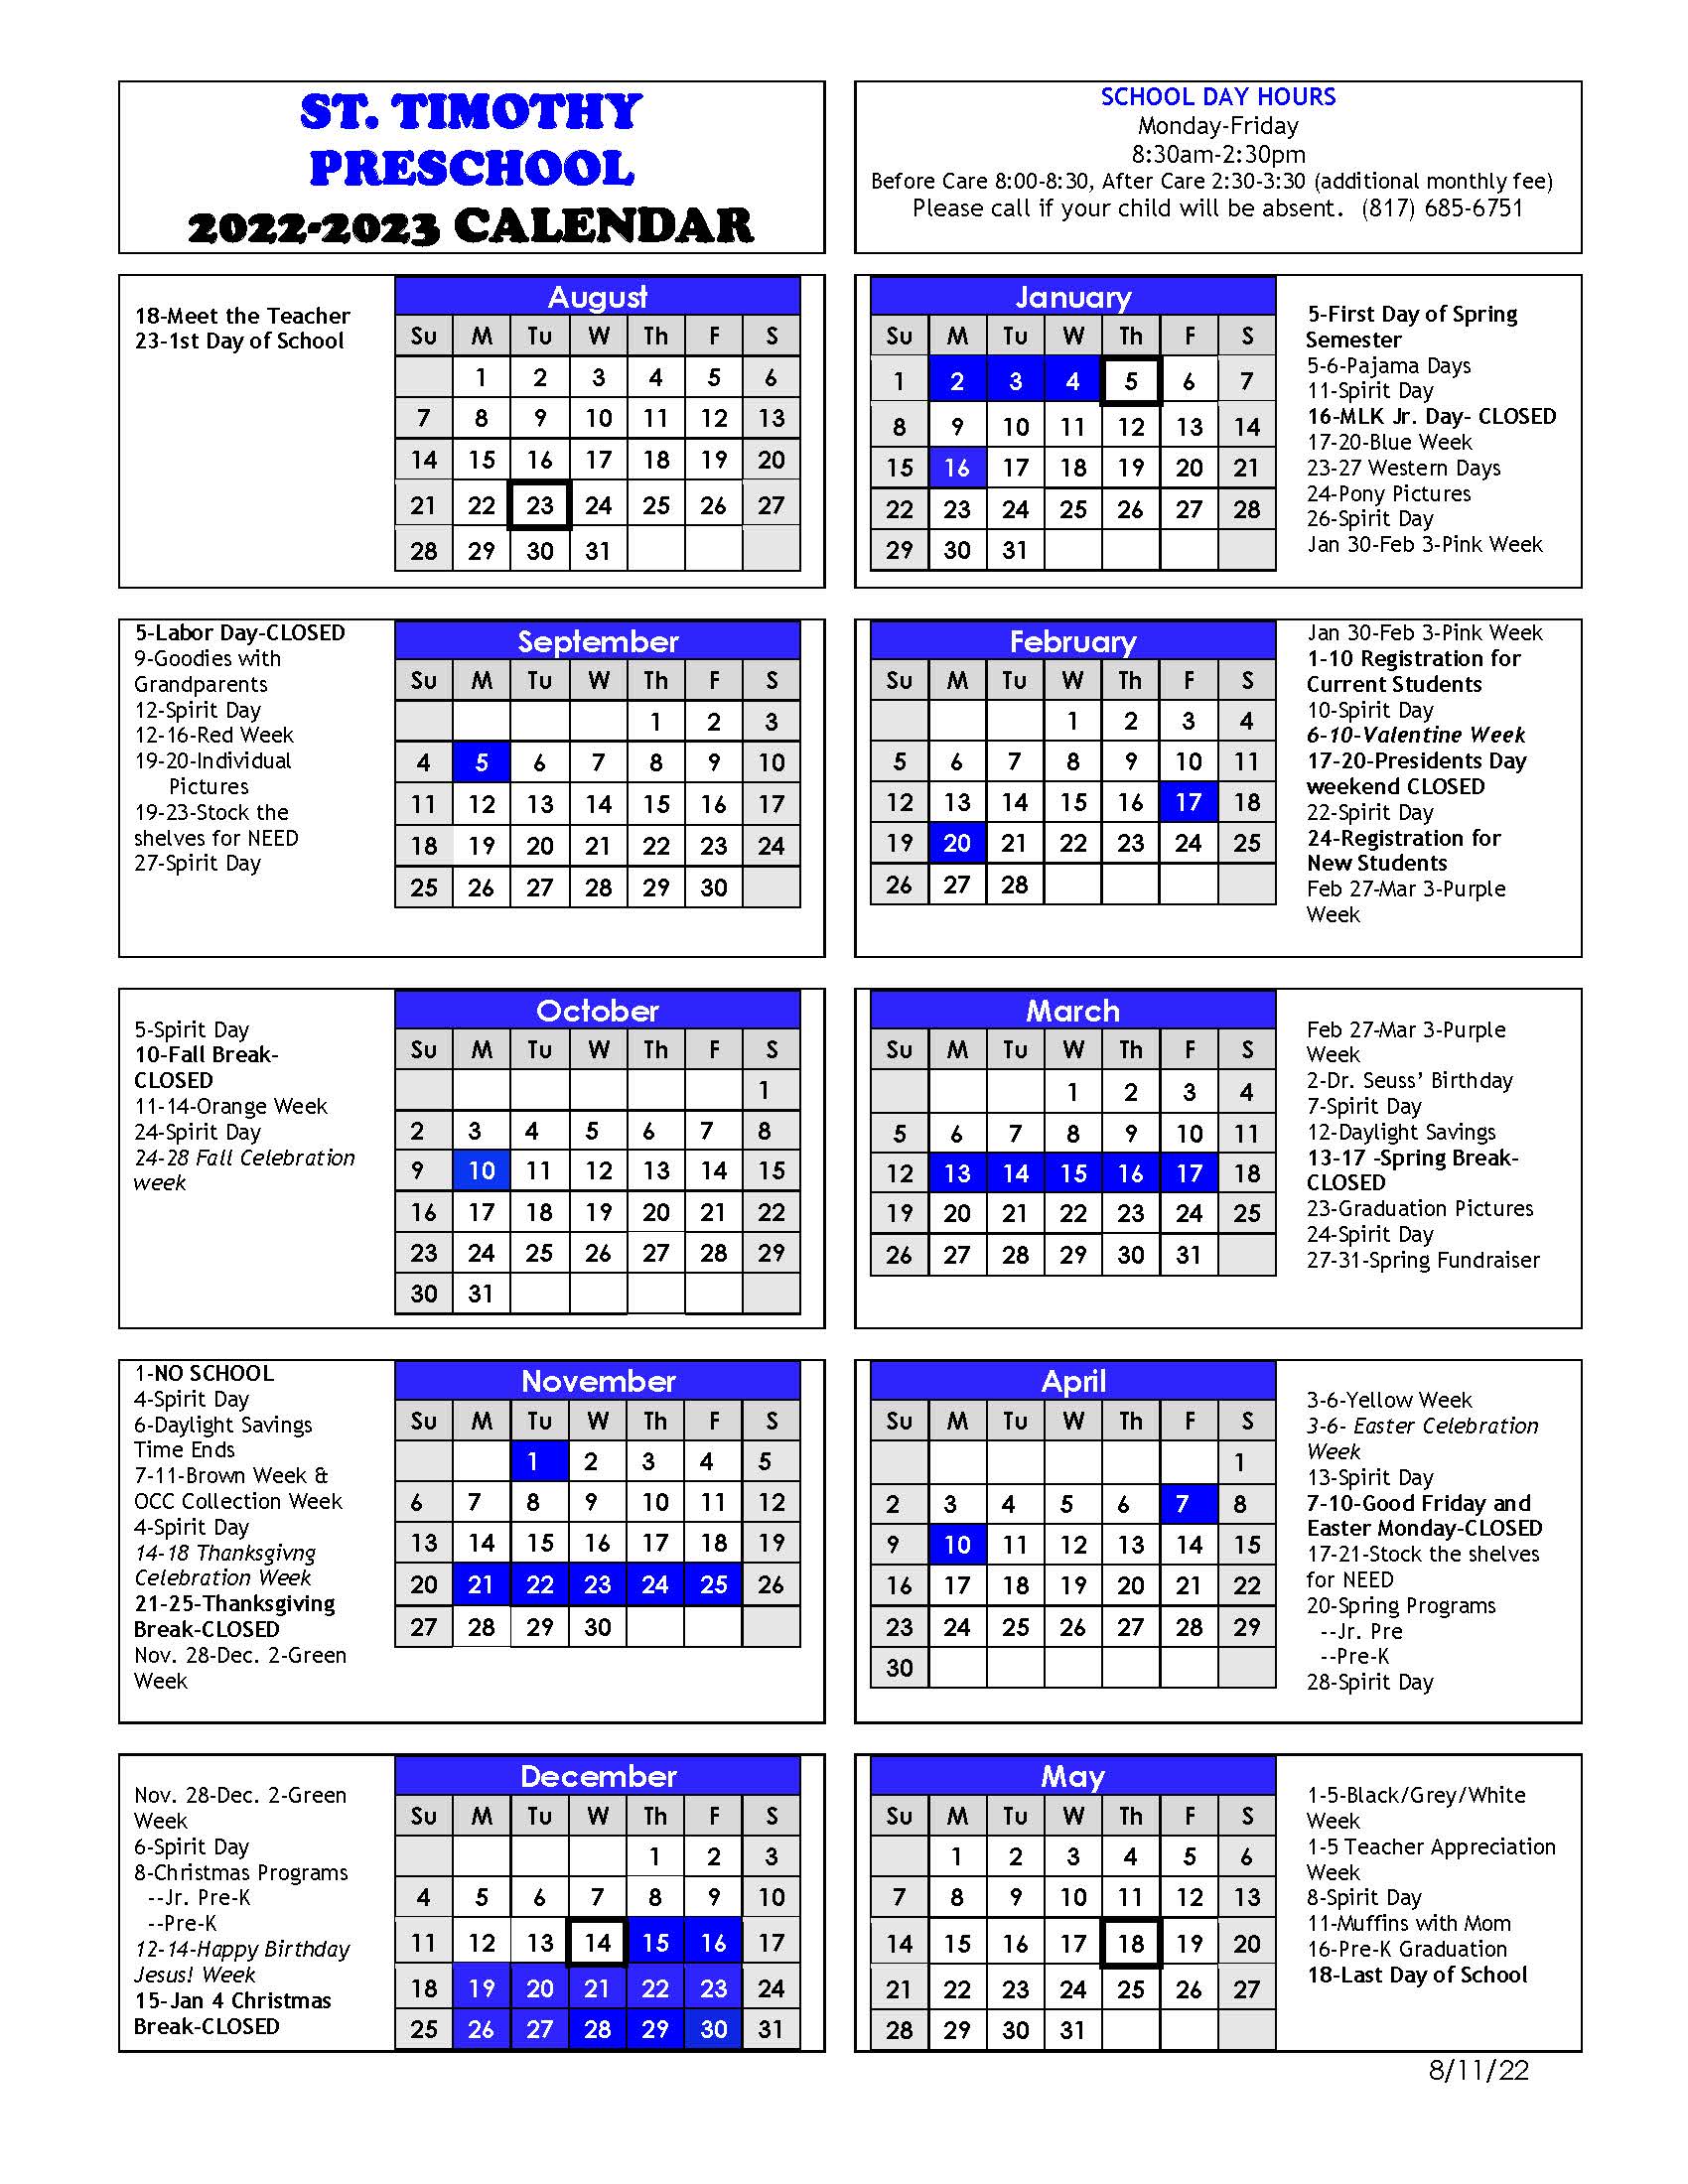 2022-2023-school-year-calendar-st-timothy-preschool